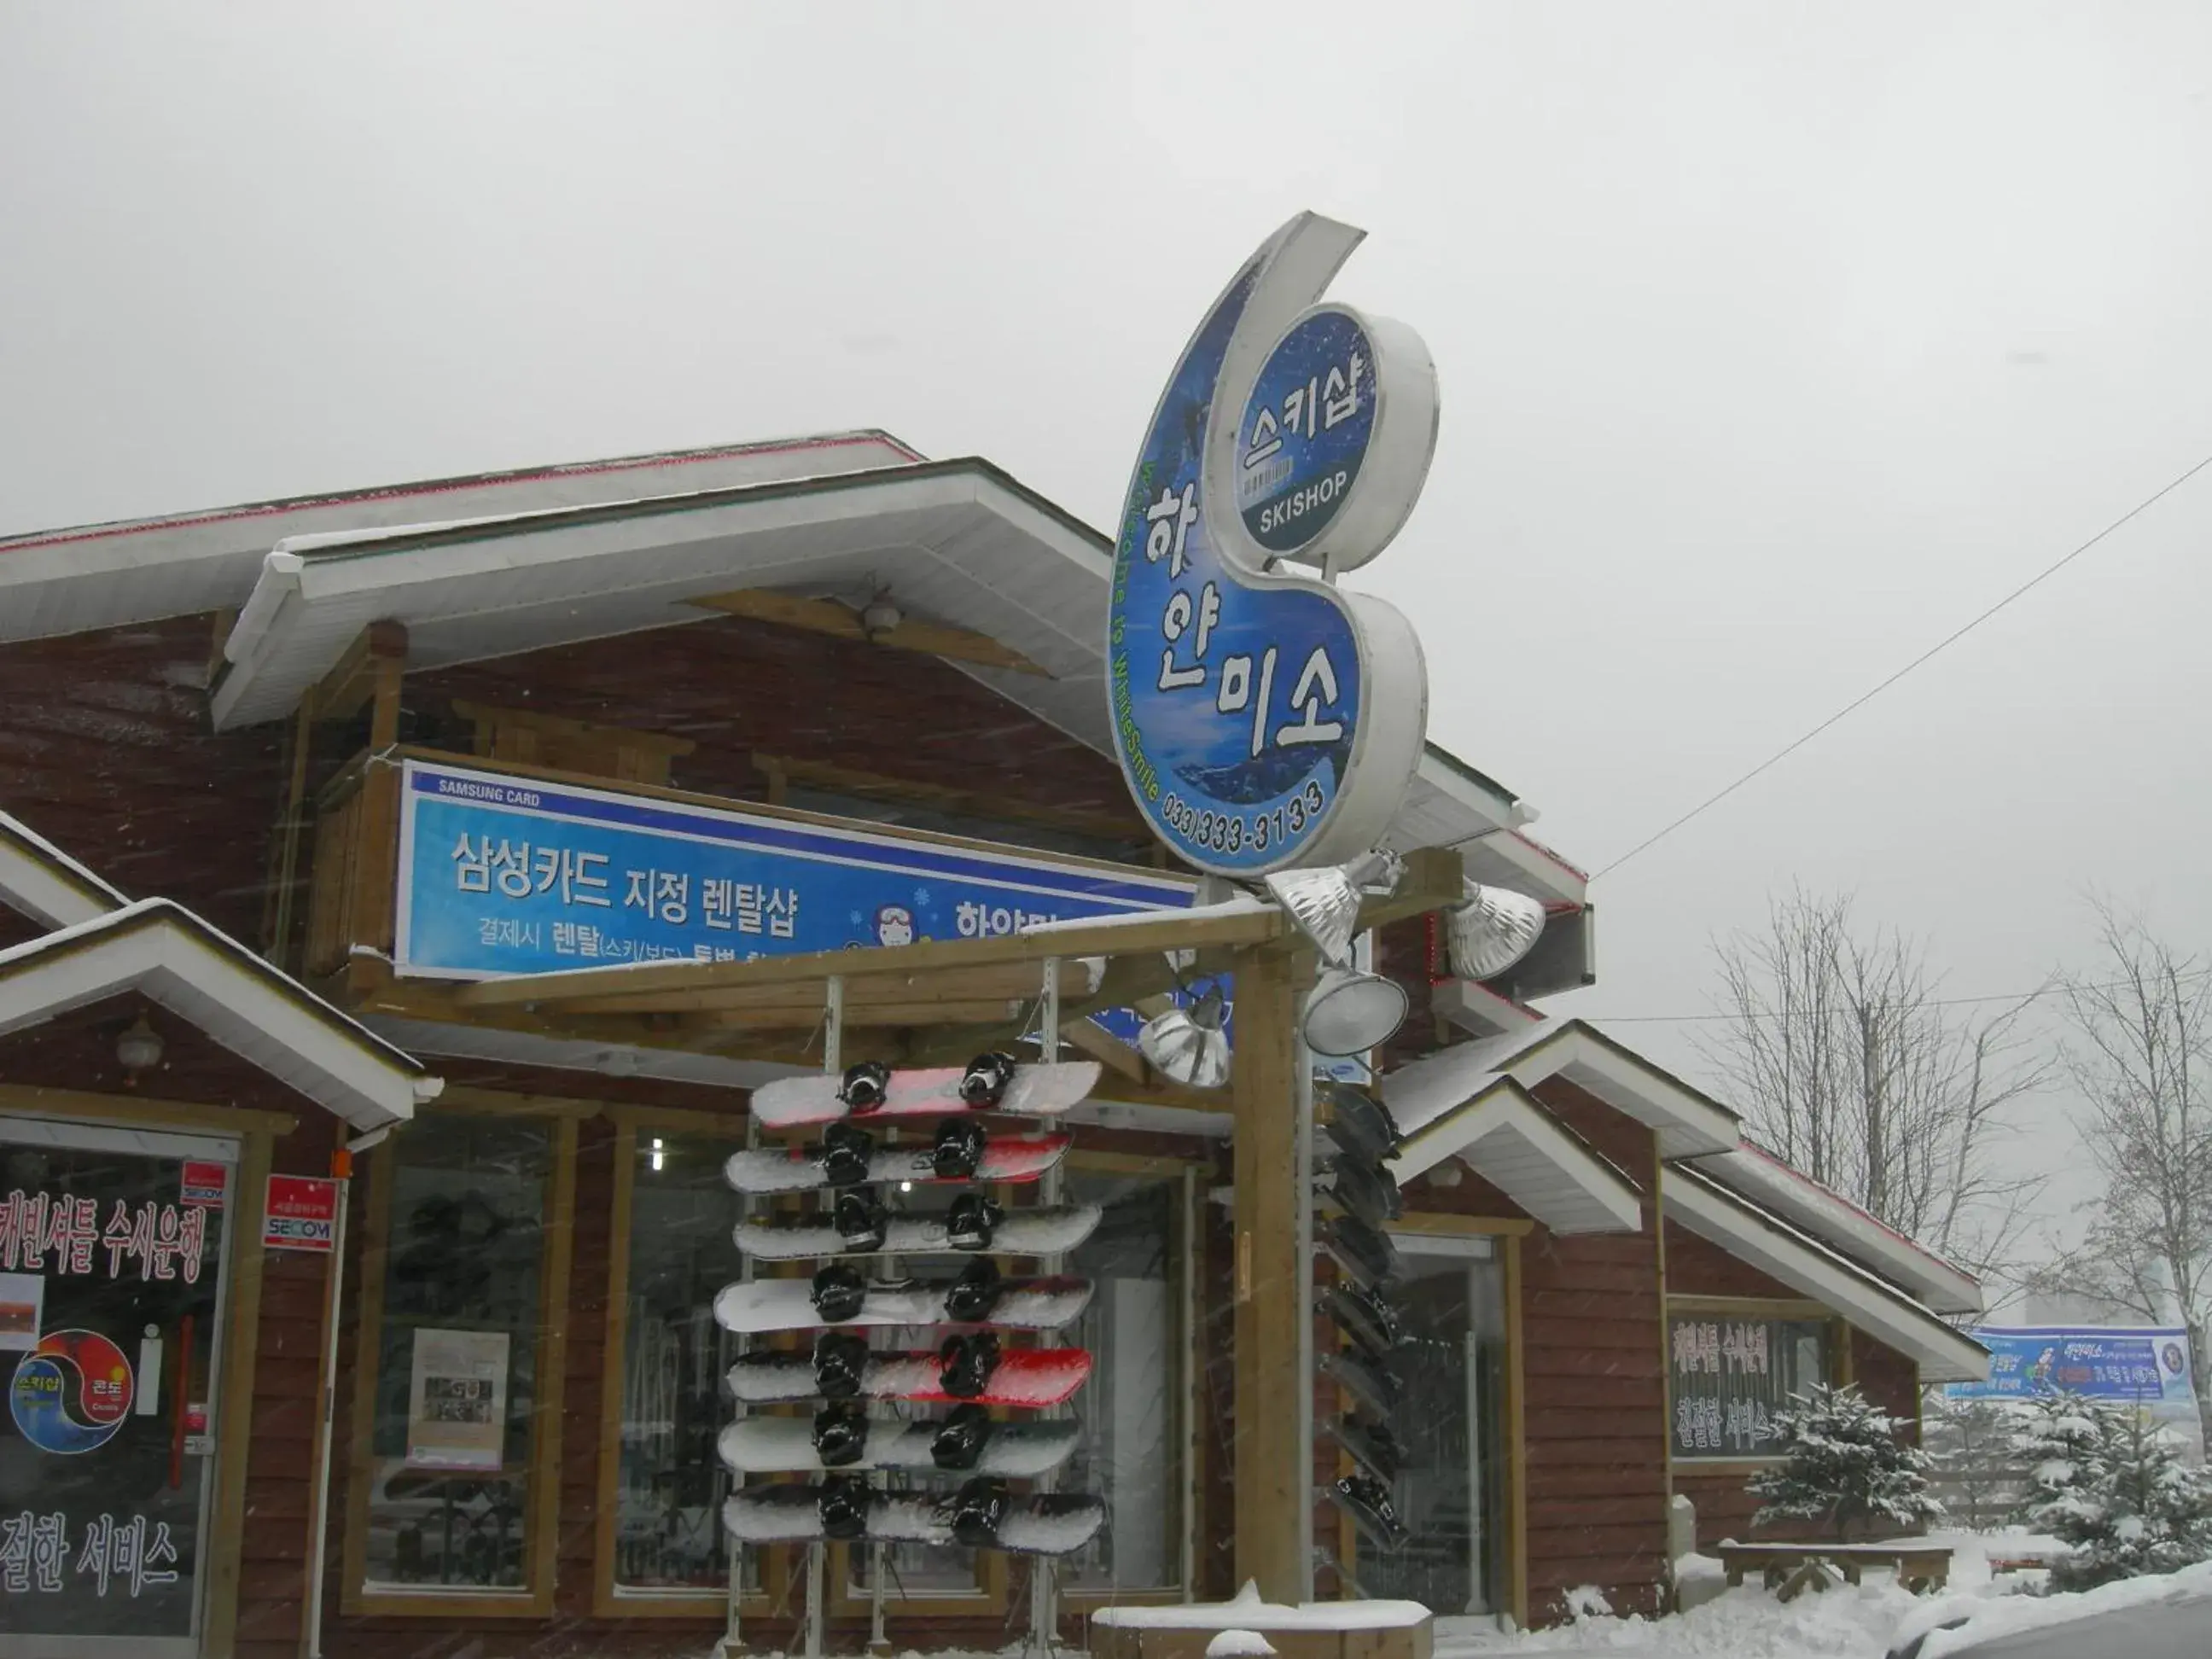 Ski School, Property Building in White Cabin